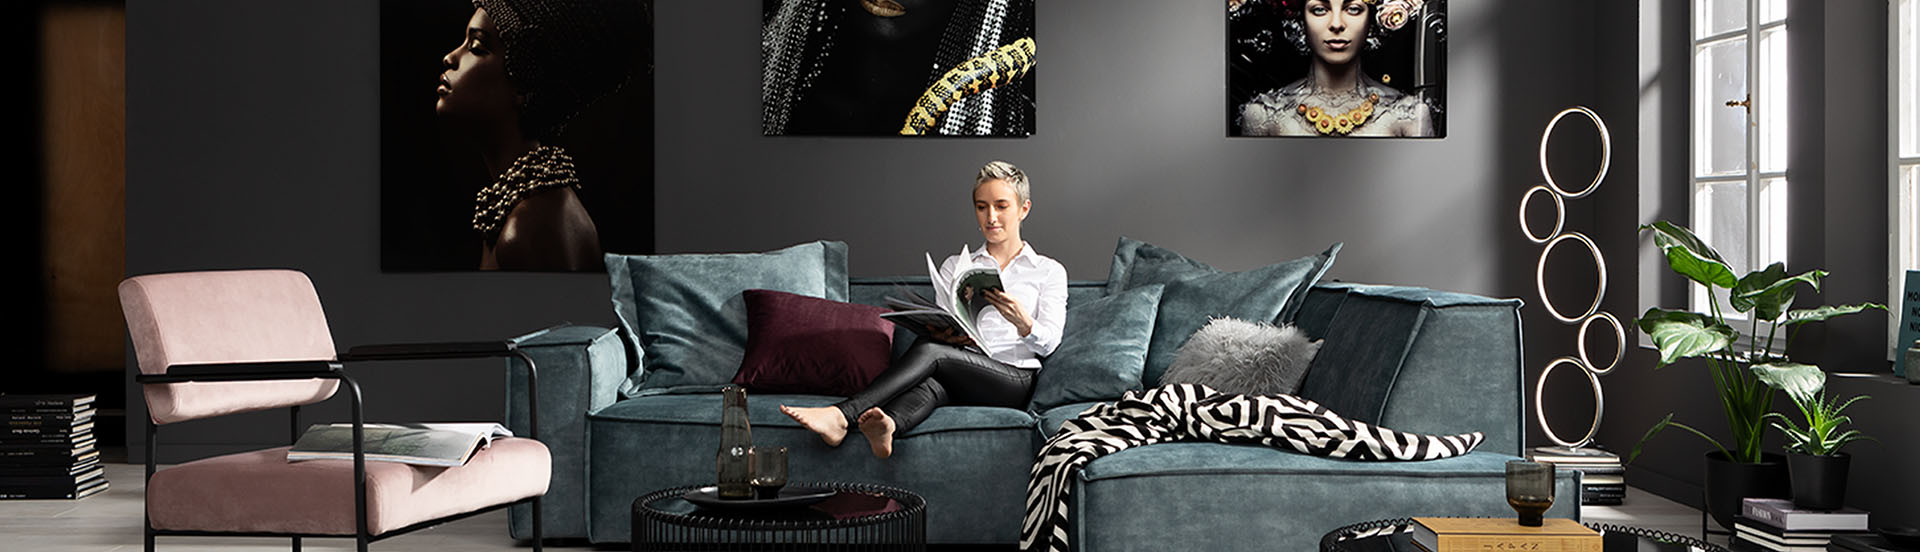 Eine Frau sitzt gemütlich auf einem Sofa und blättert duch eine Broschüre auf der Suche nach Tipps und Anregungen für ein schönes Zuhause.